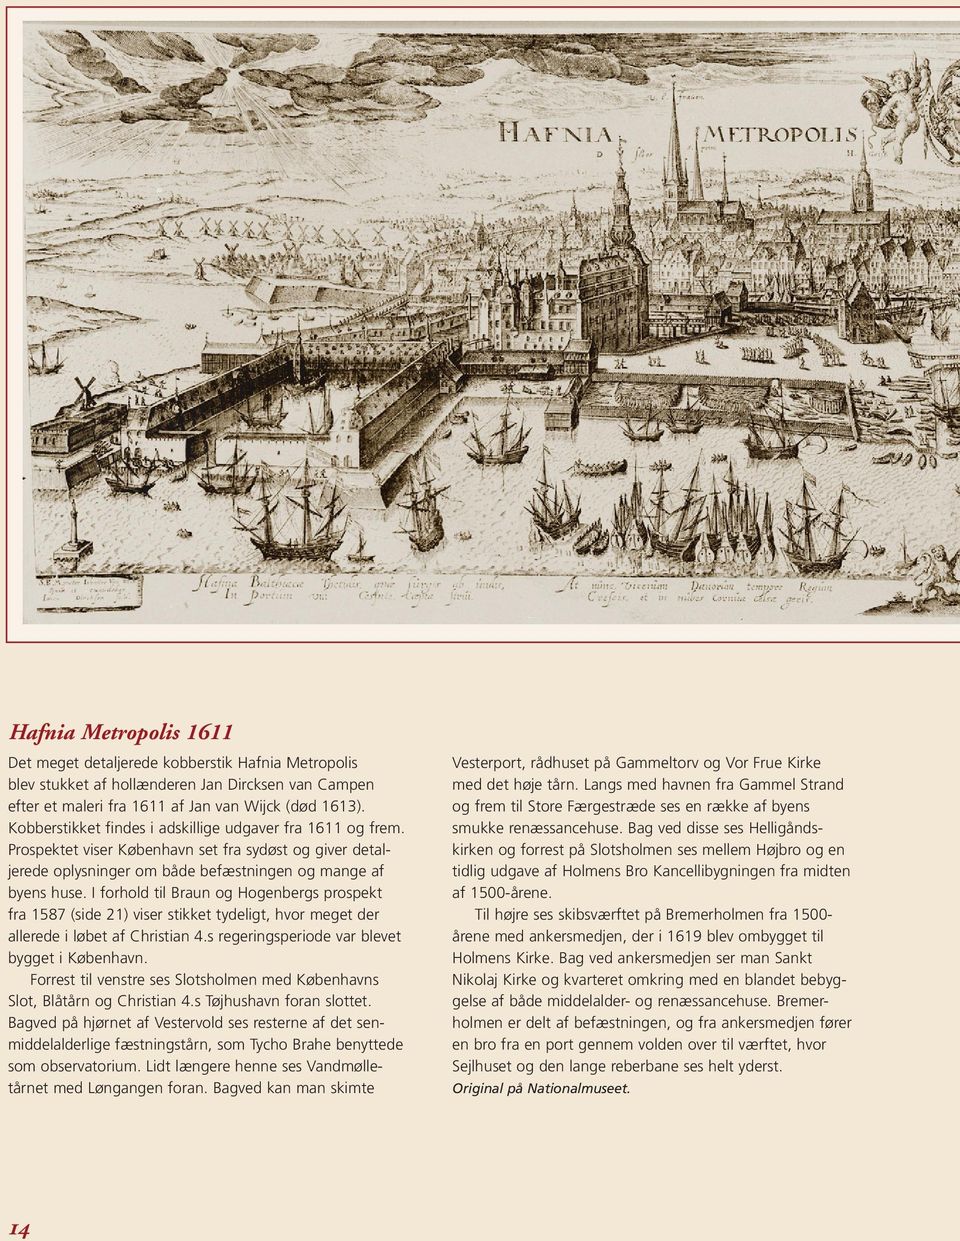 I forhold til Braun og Hogenbergs prospekt fra 1587 (side 21) viser stikket tydeligt, hvor meget der allerede i løbet af Christian 4.s regeringsperiode var blevet bygget i København.